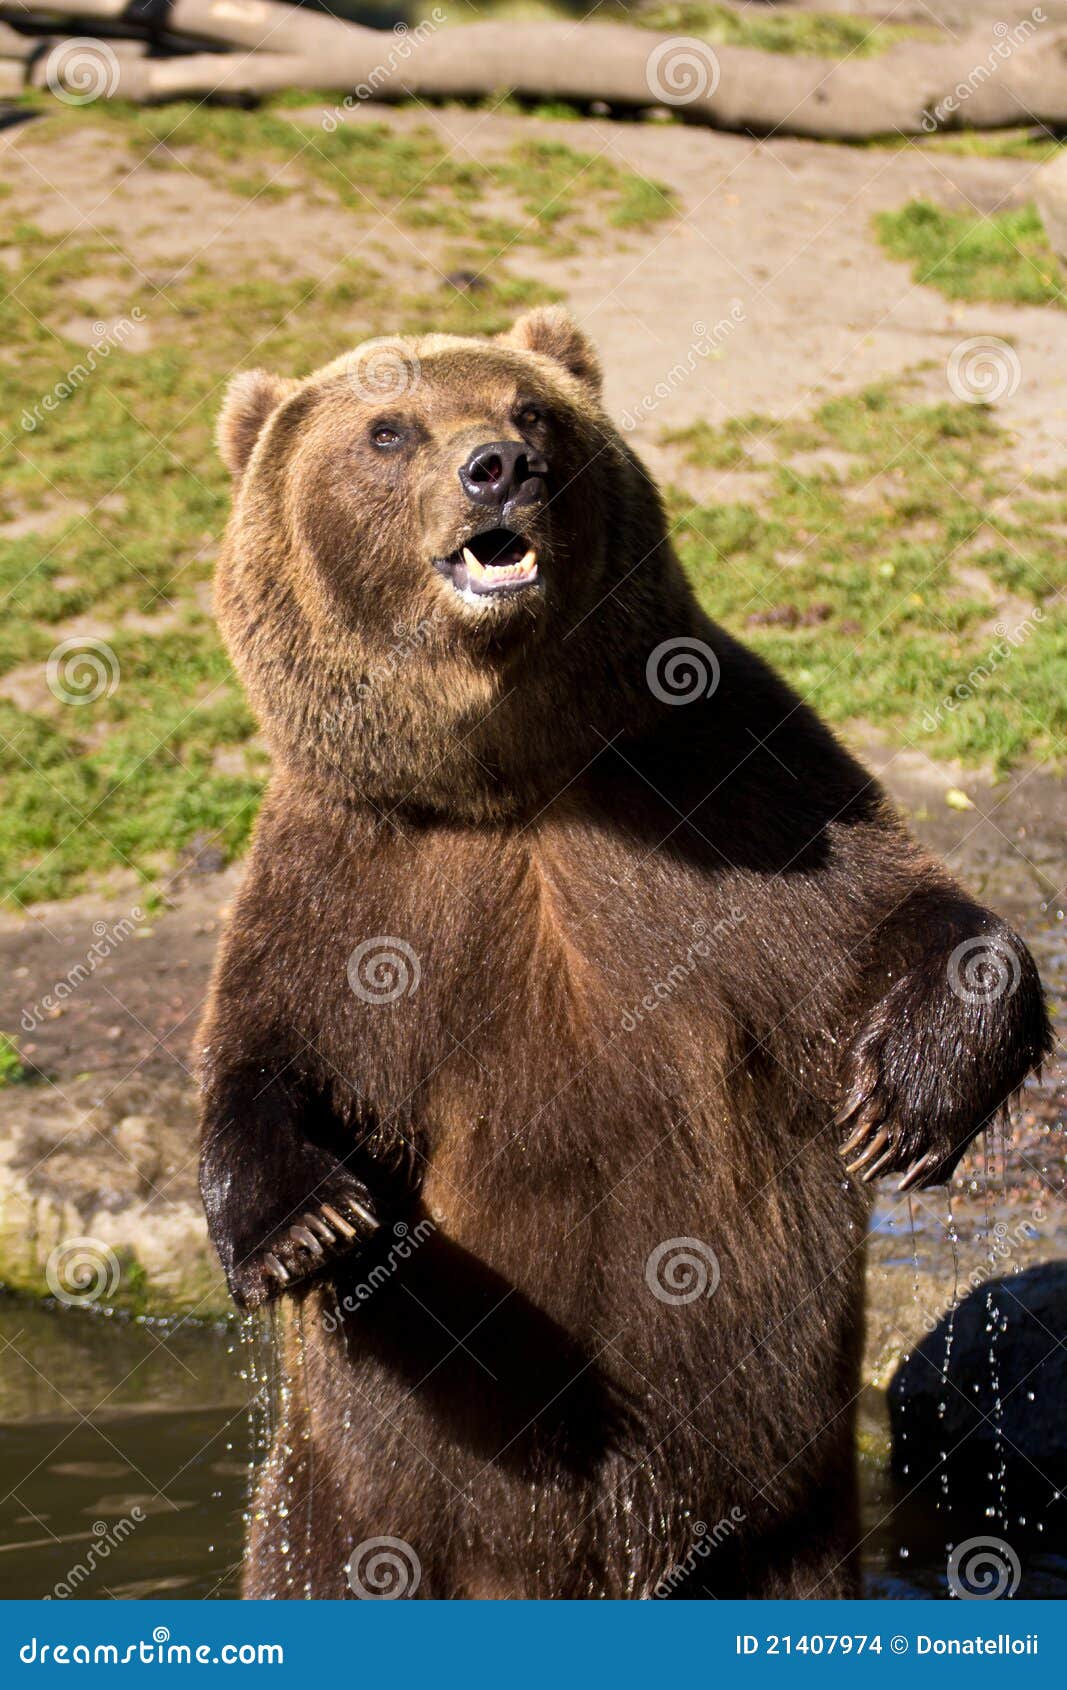 brown-bear-surprised-21407974.jpg